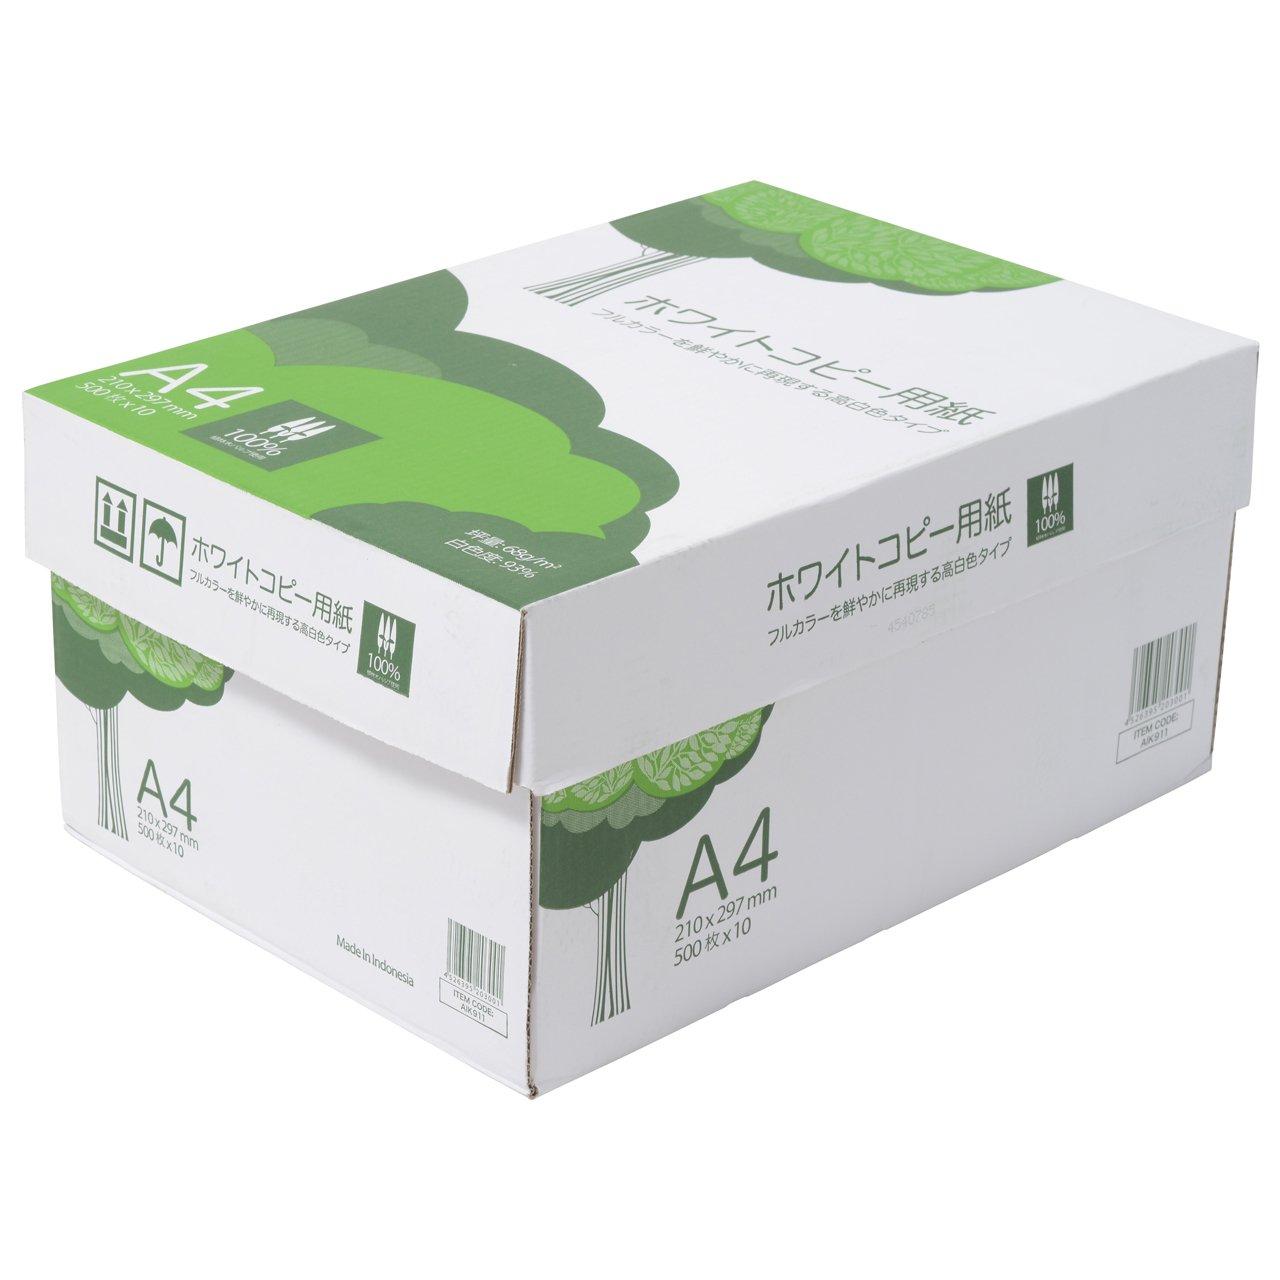 上品なスタイル まとめ TANOSEE PPC用紙 Pure White A4 1箱 2500枚 ad